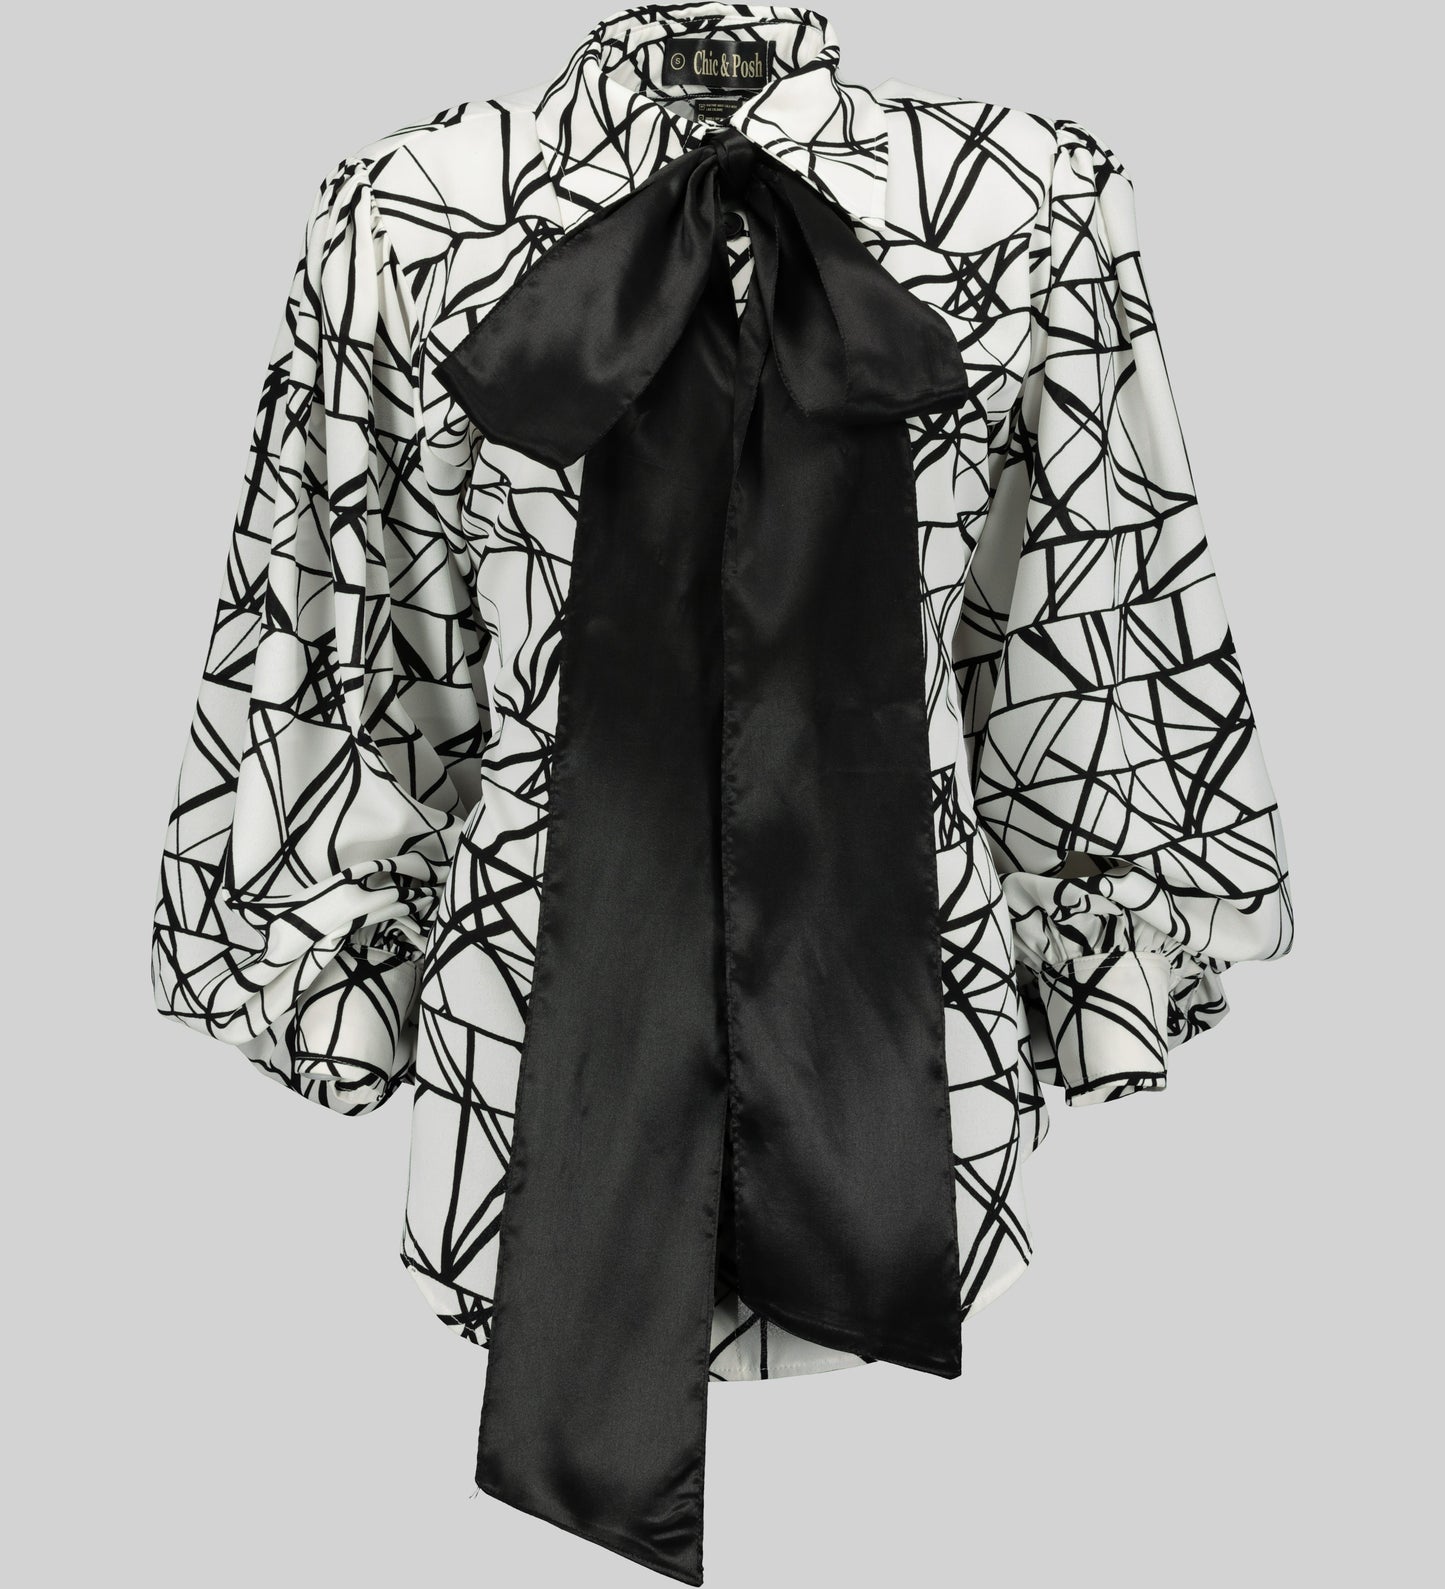 Aisha Long Sleeve Blouse with Tie